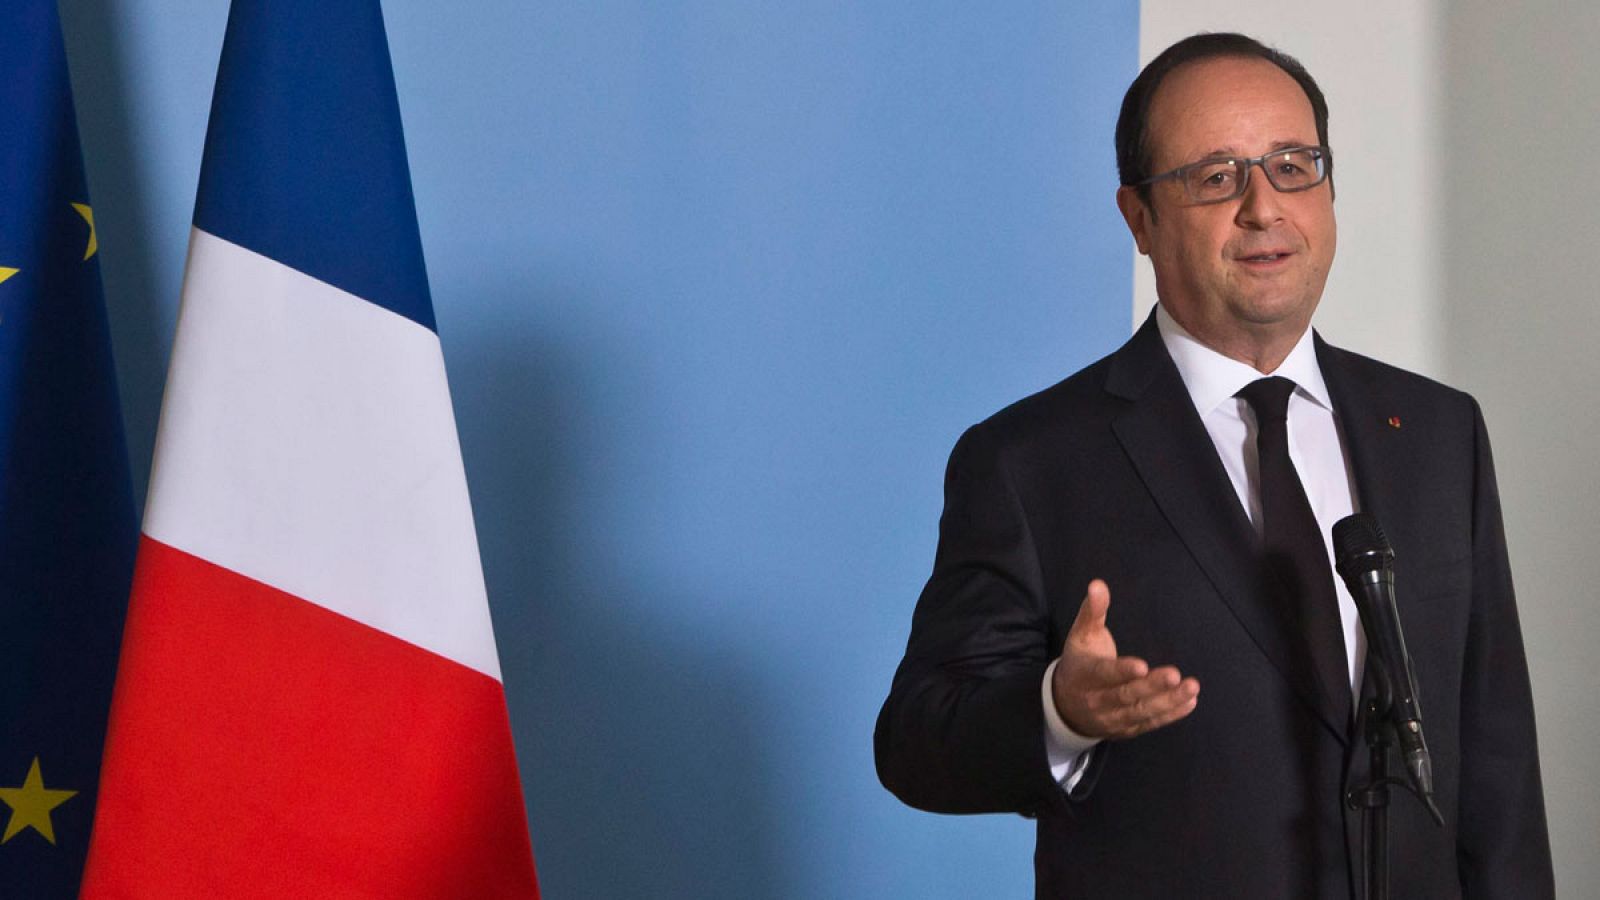 El presidente francés, François Hollande, se compromete a investigar a fondo los papeles